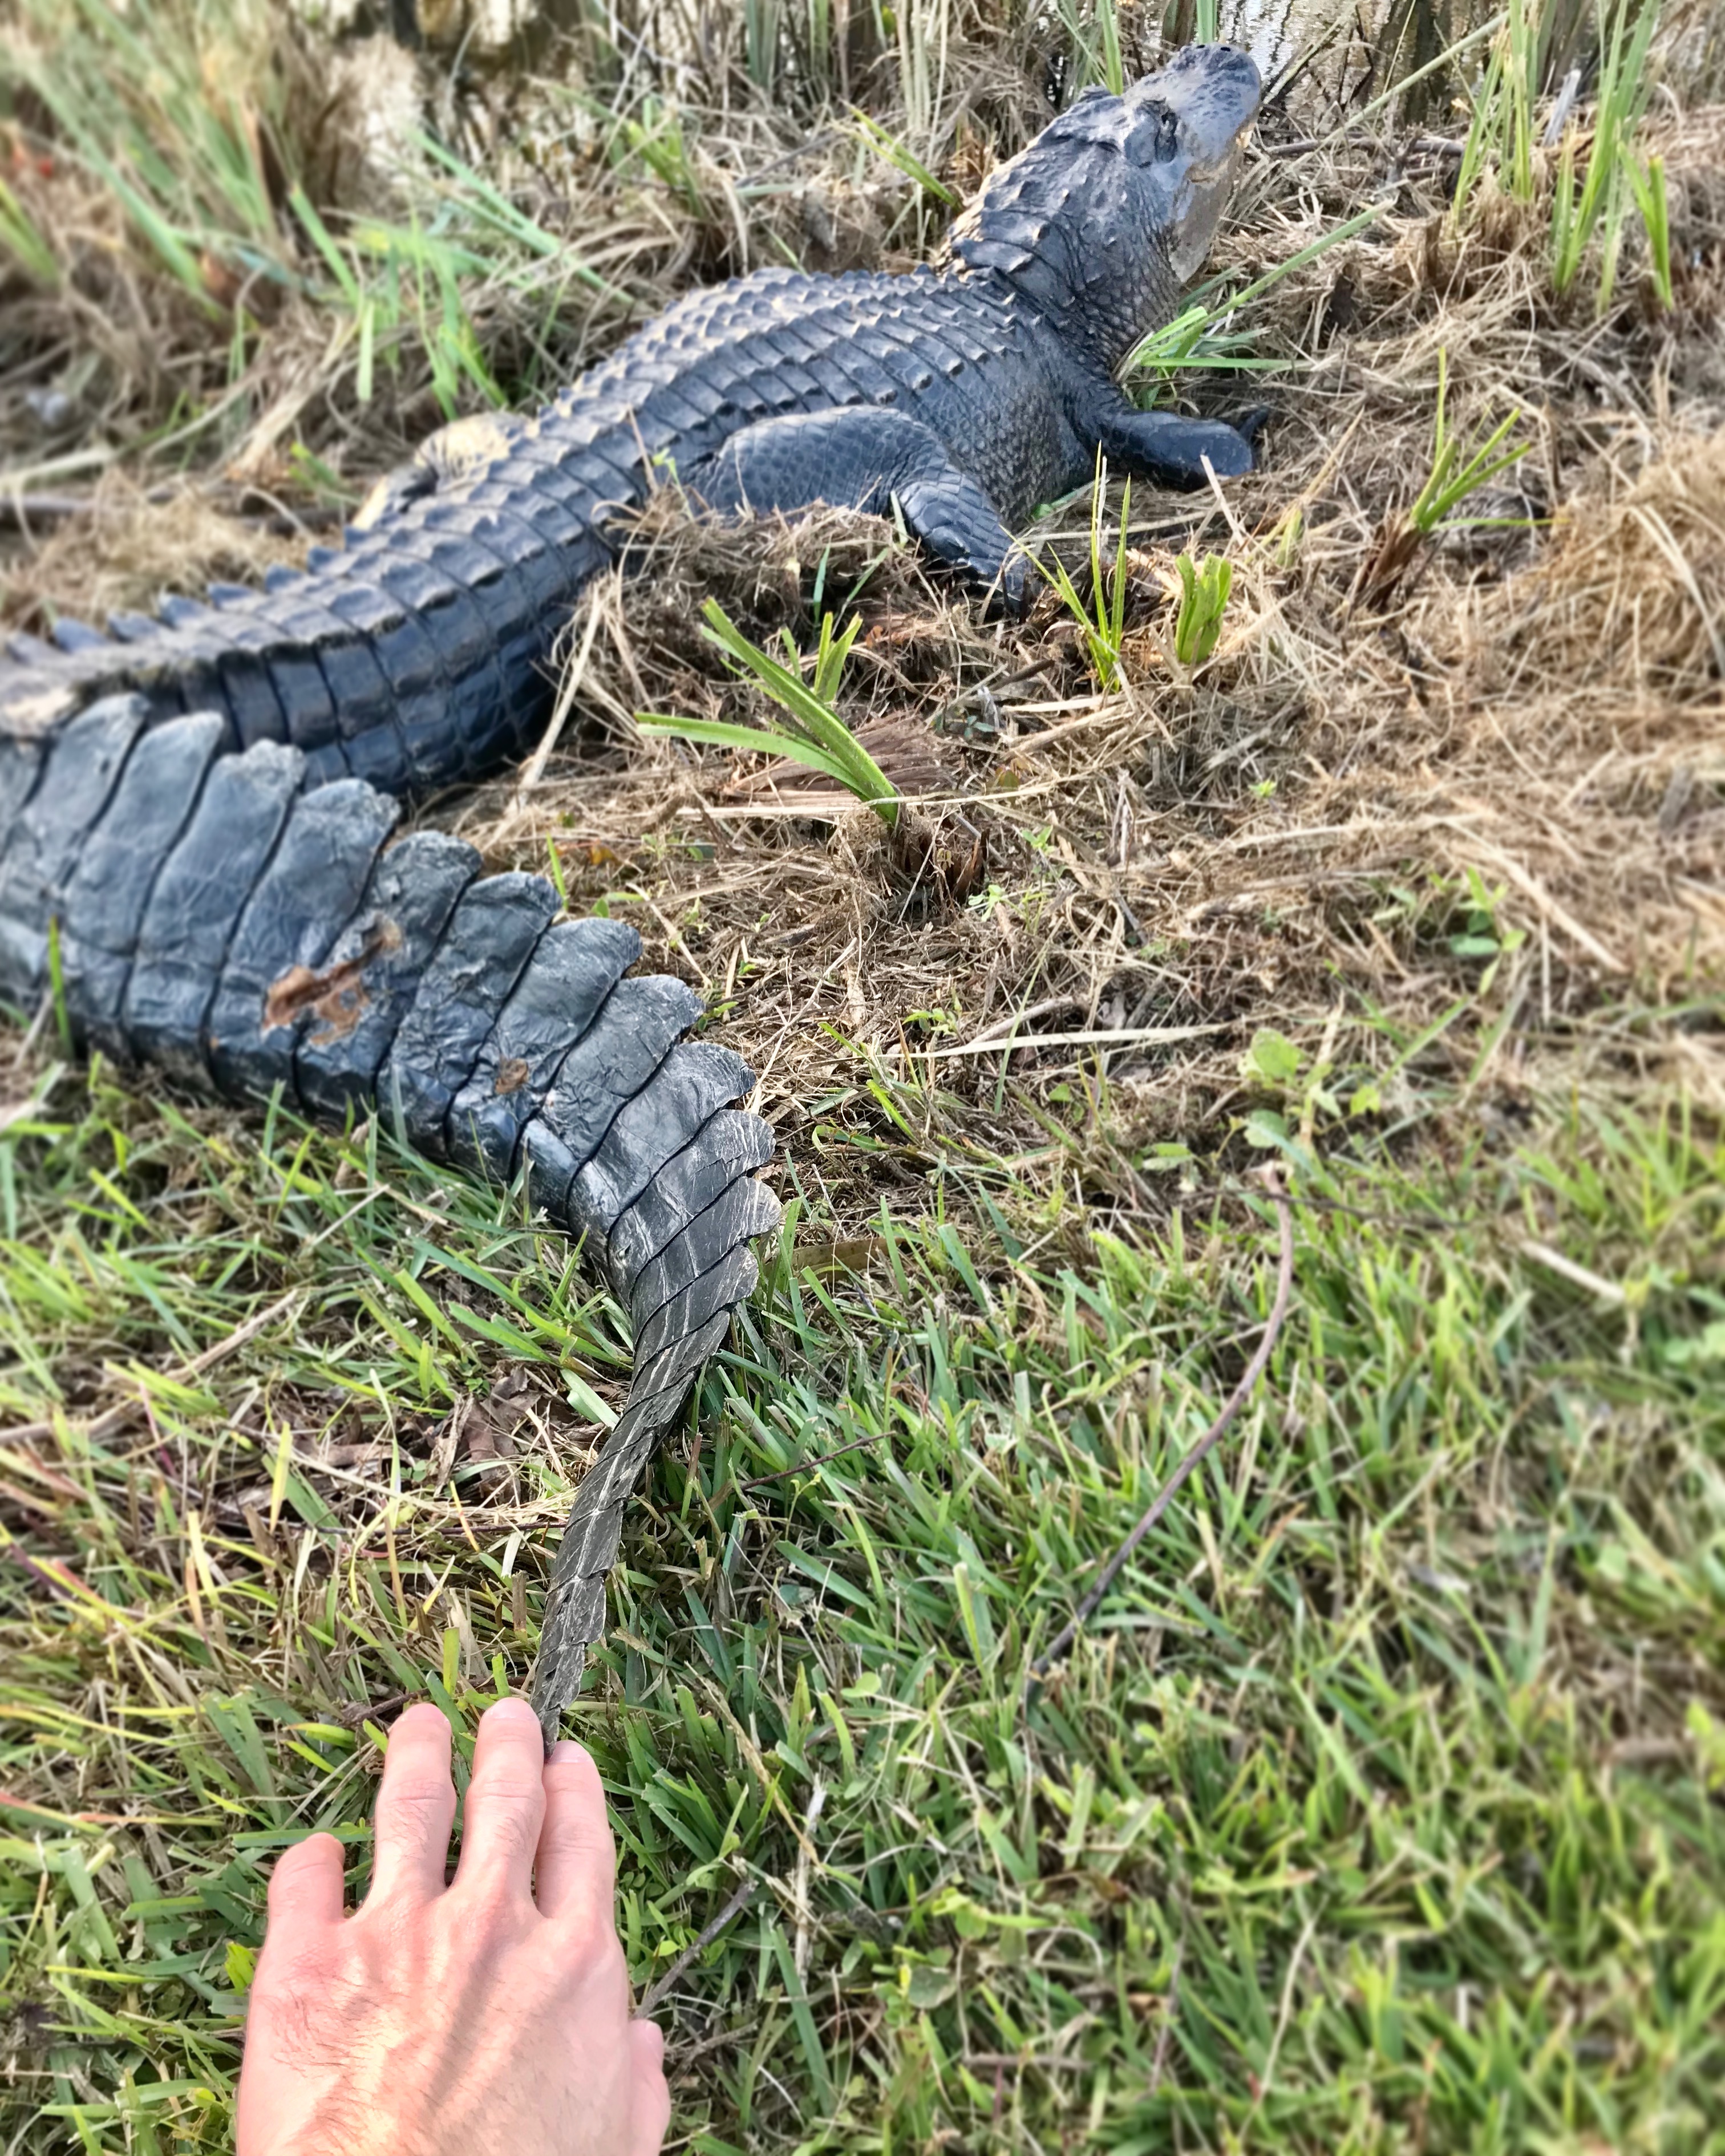 Hands-on Alligator, Everglades National Park